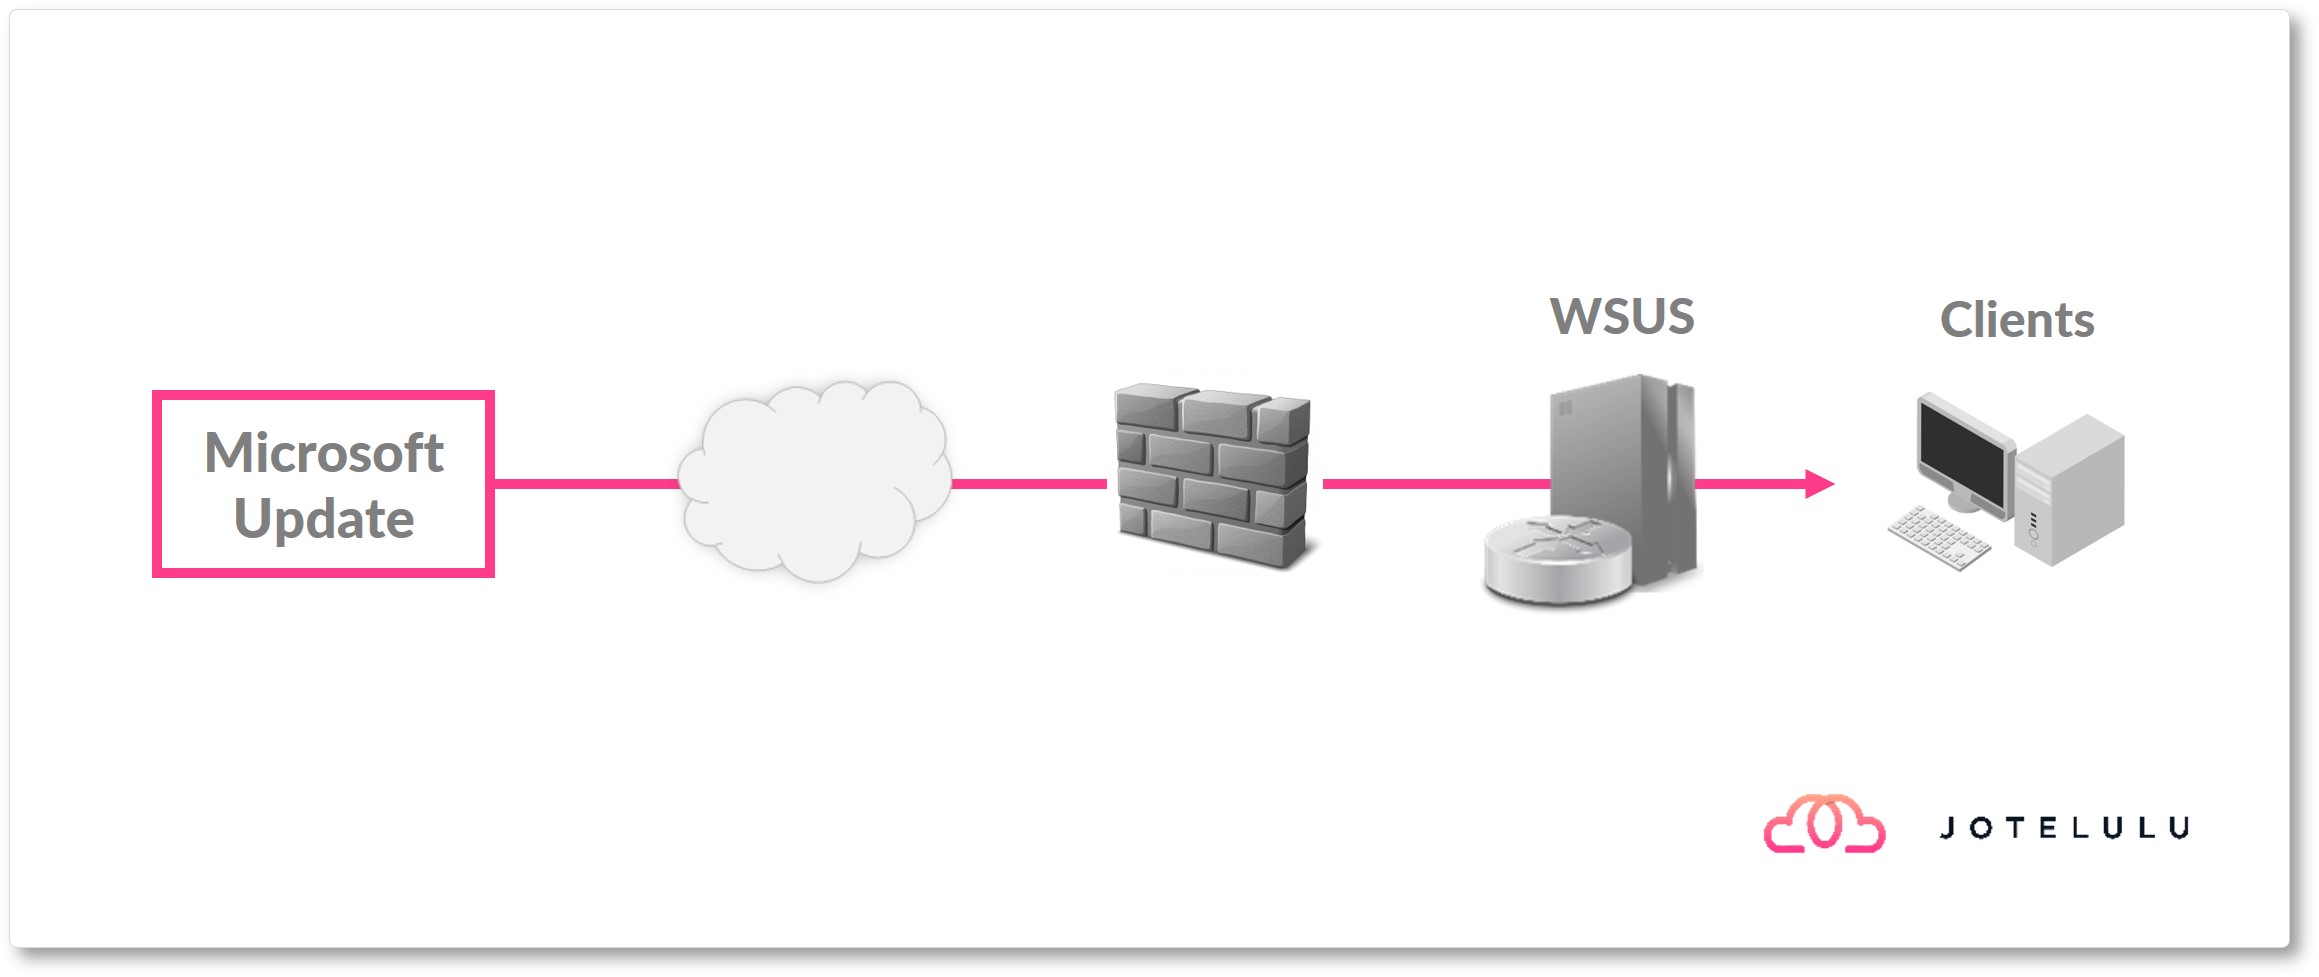 Image. Arquitetura básica do WSUS para a atualização de máquinas.